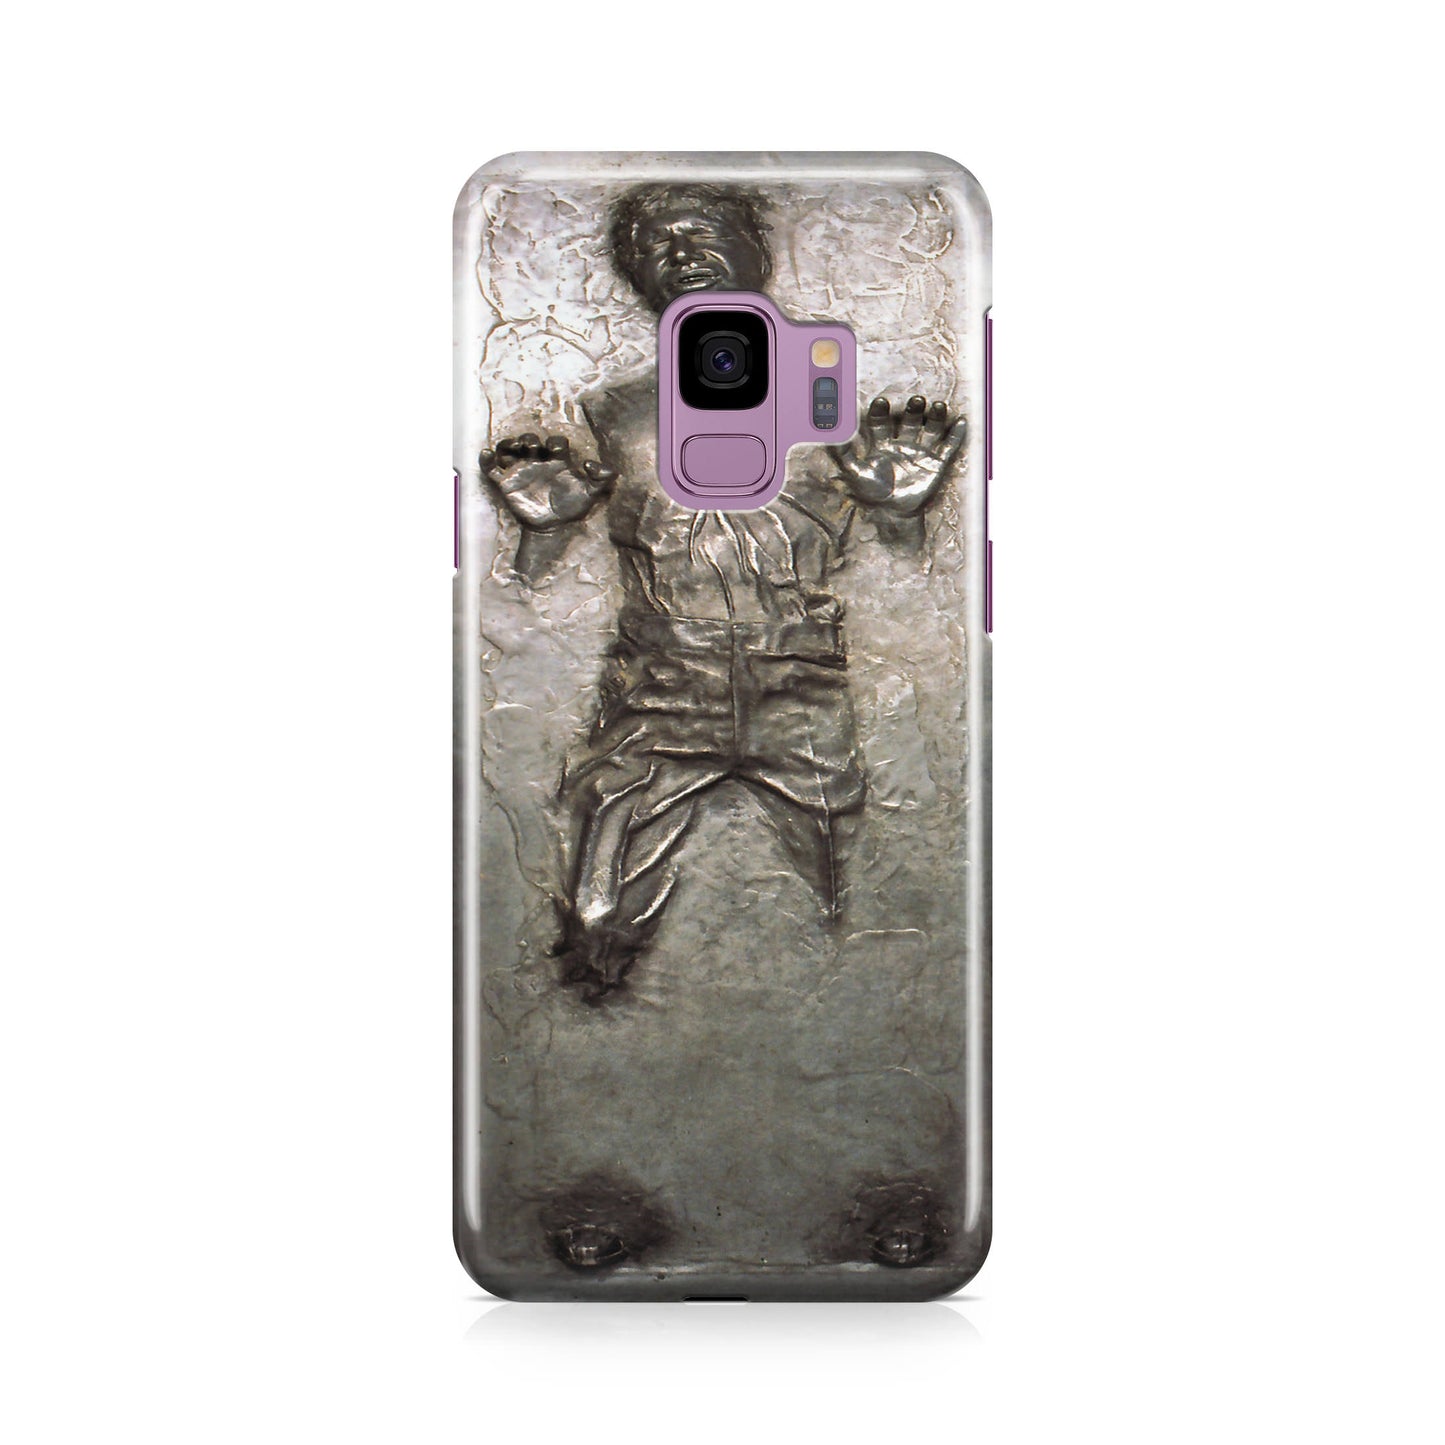 Han Solo in Carbonite Galaxy S9 Case